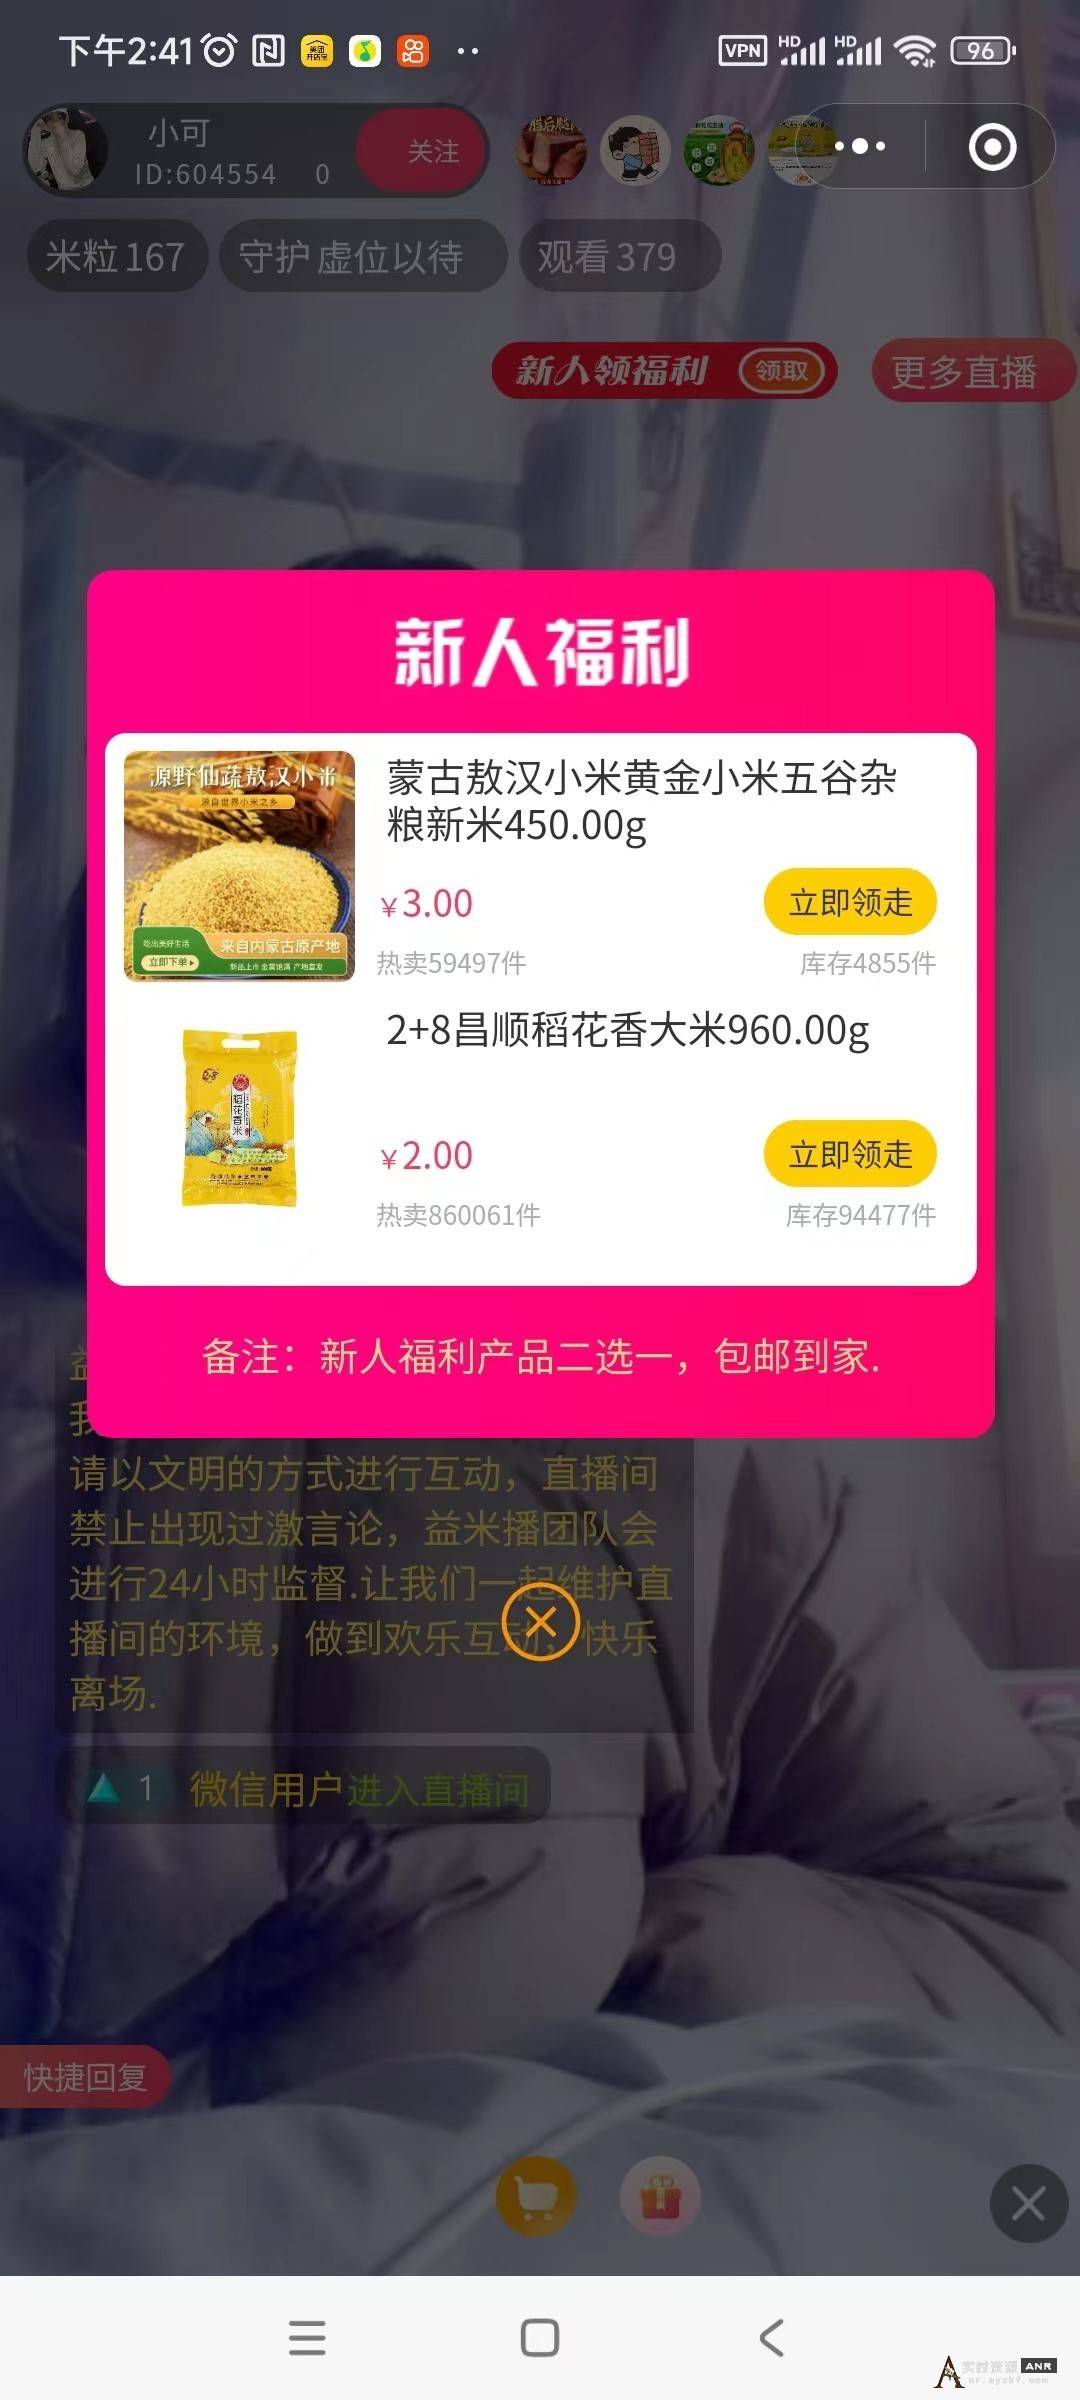 2元购买960g稻花香大米或3元购买450g黄金小米